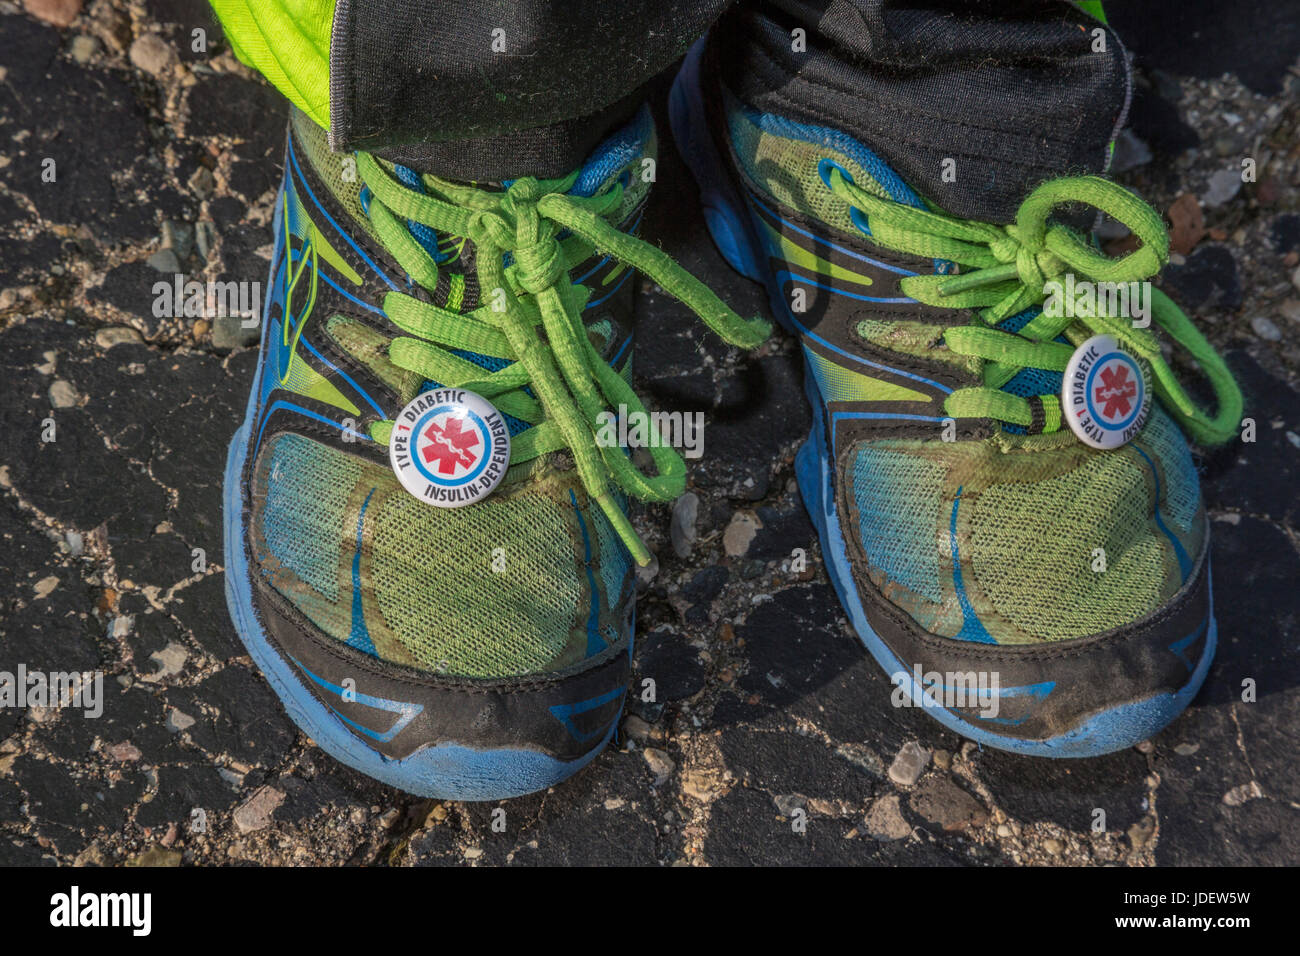 Un garçon de six ans porte des tags sur ses chaussures attention qu'il a le diabète de type 1, aussi appelé diabète juvénile. Son taux de sucre dans le sang doit être surveiller de près Banque D'Images